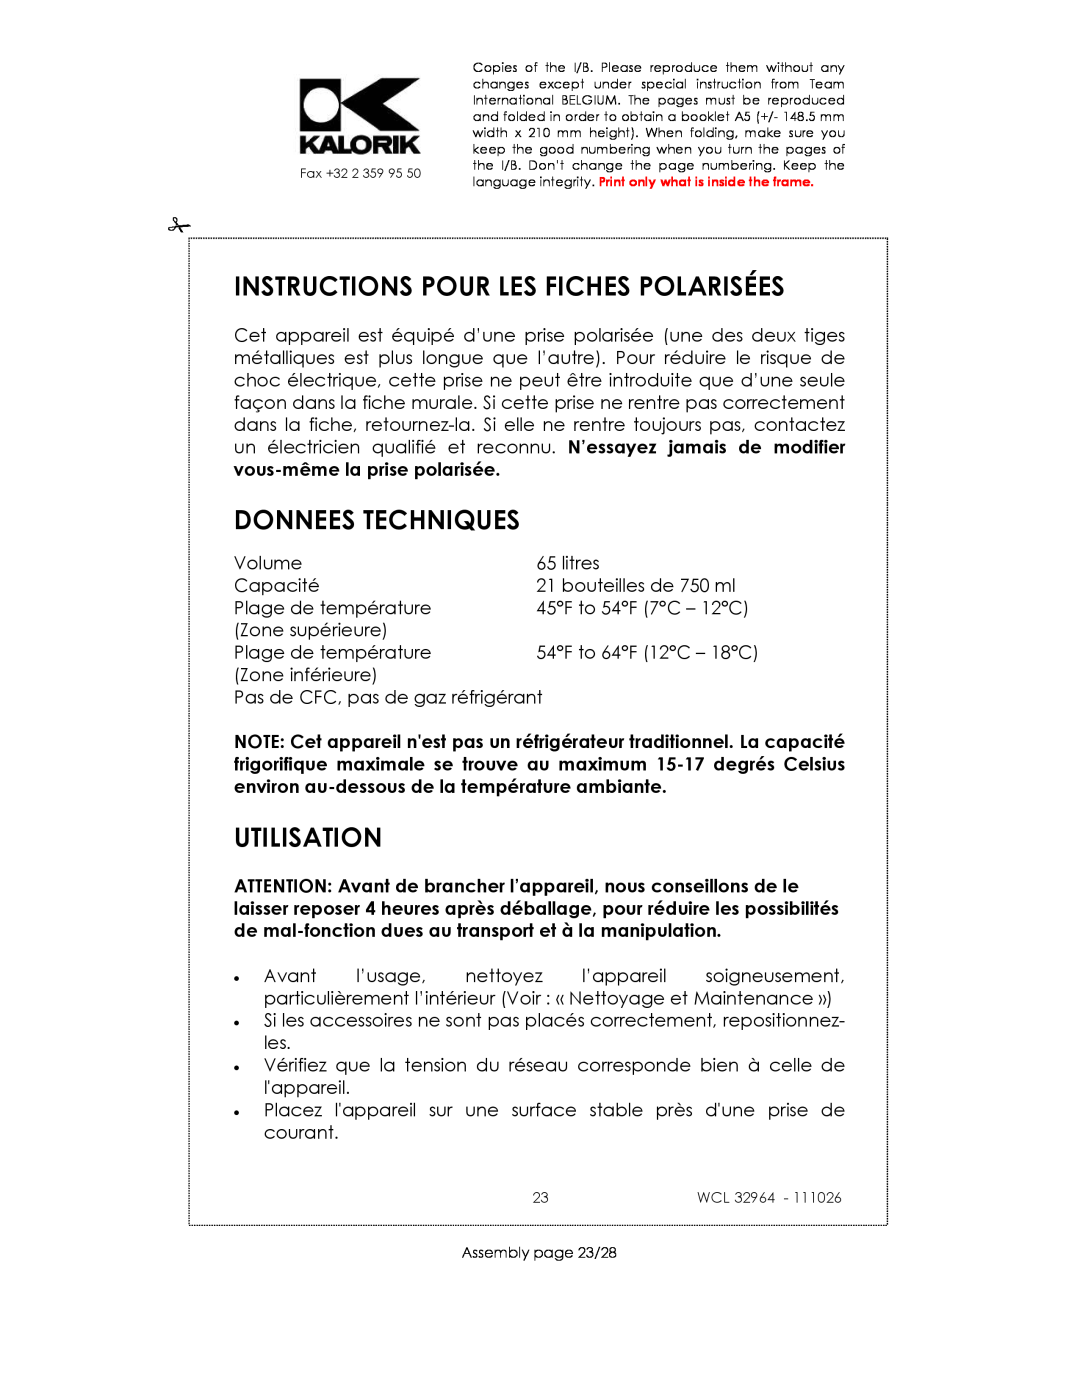 Kalorik USK WCL 32964 115V~130W manual Instructions Pour Les Fiches Polarisées, Donnees Techniques, Utilisation 